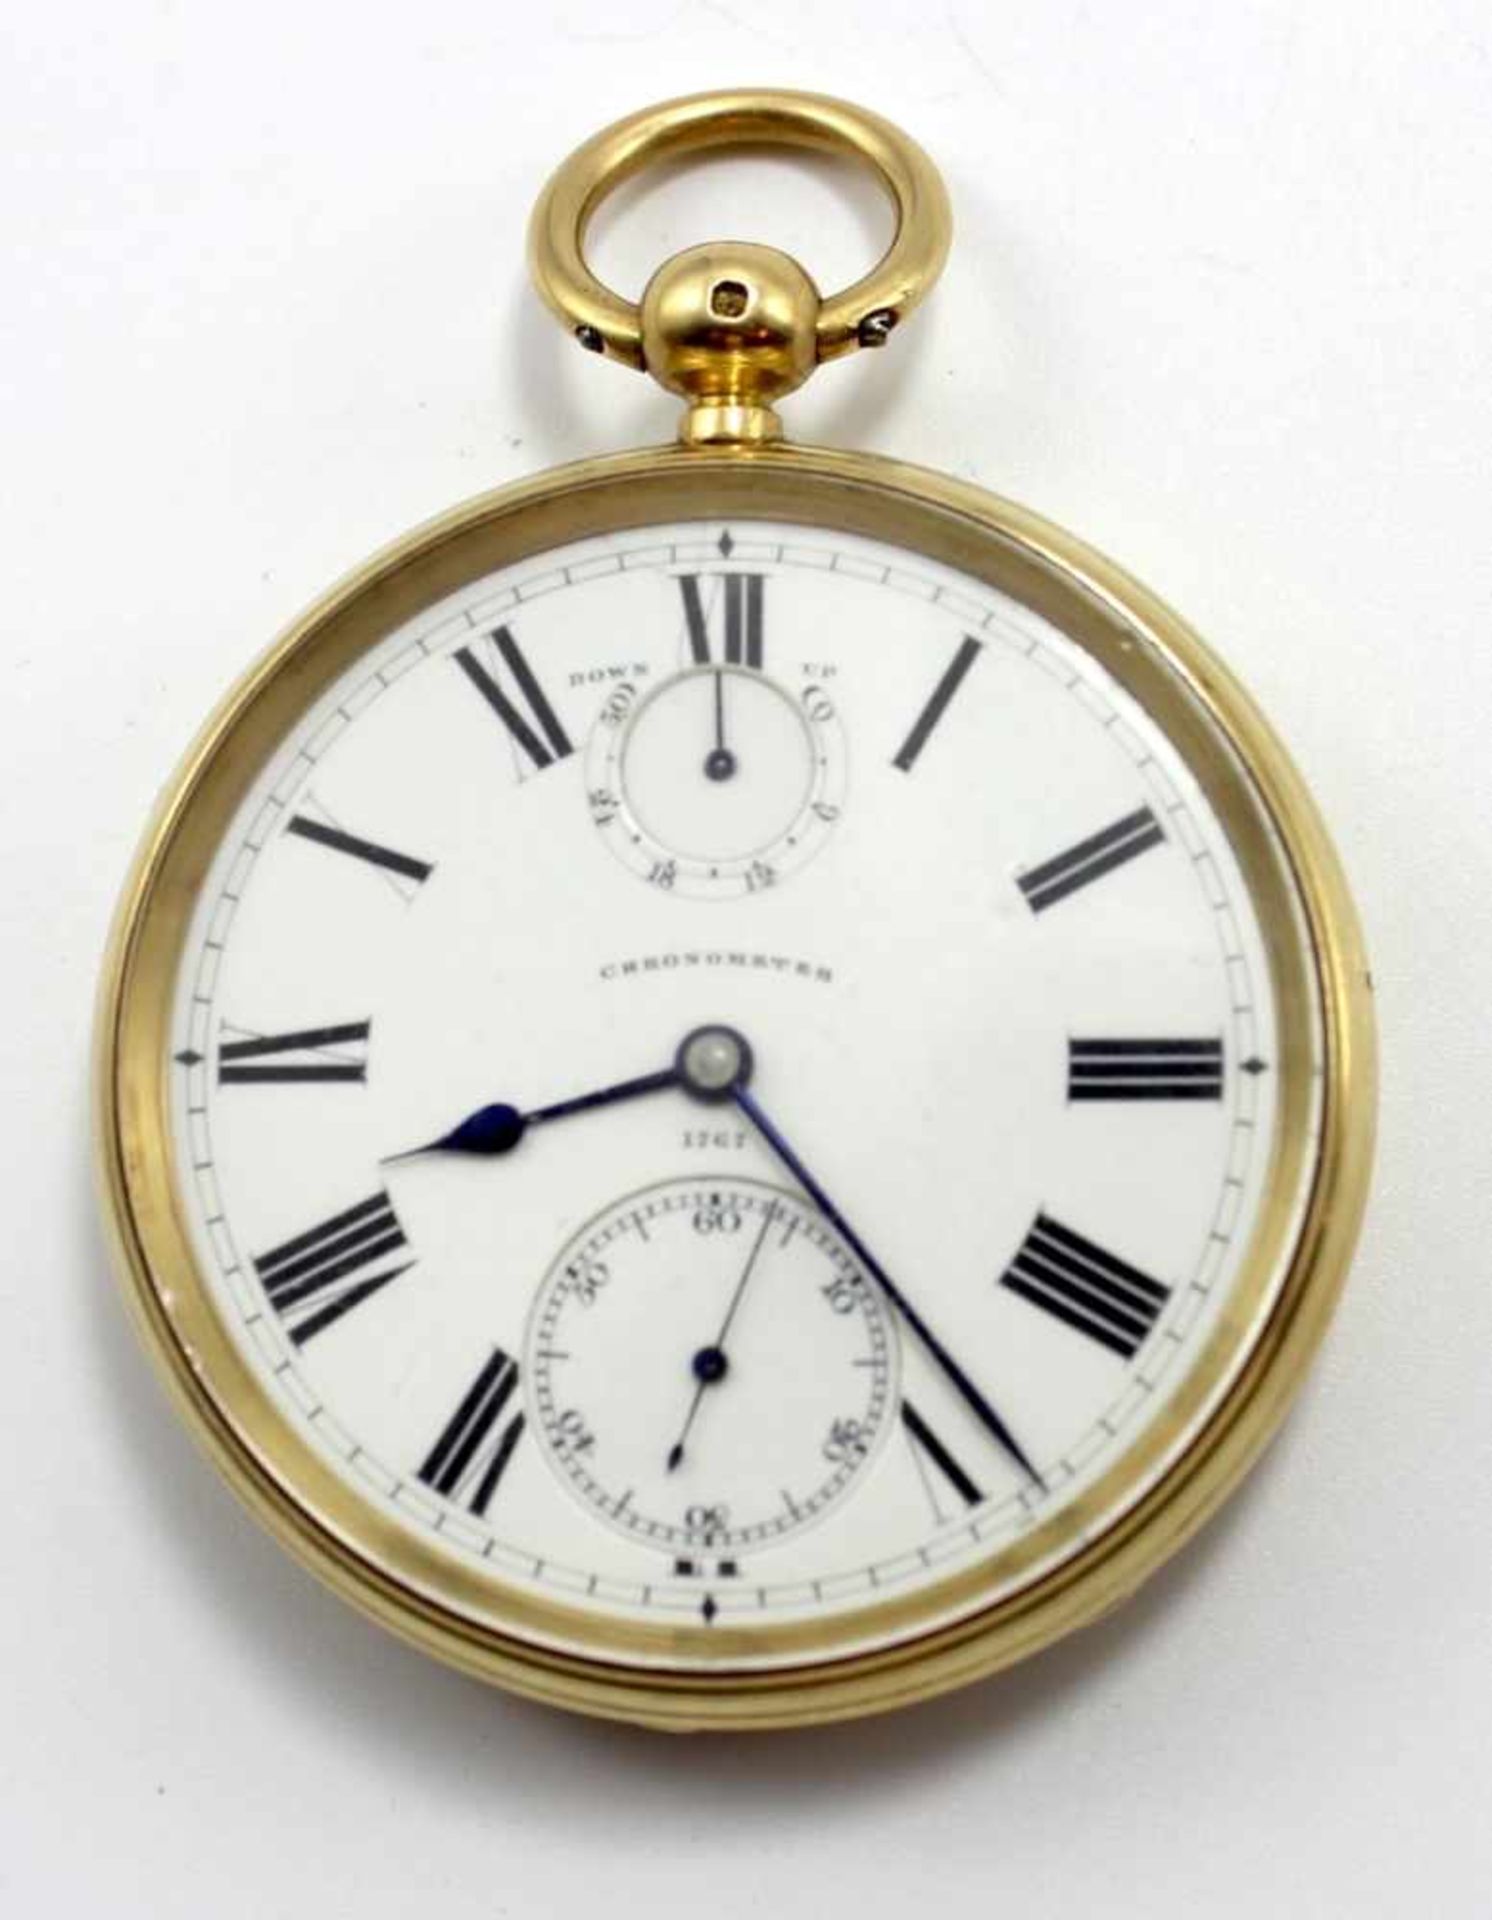 Goldene offene Herrentaschenuhr - Chronometre von G.Morton No. 1767, Islington London Gehäuse und